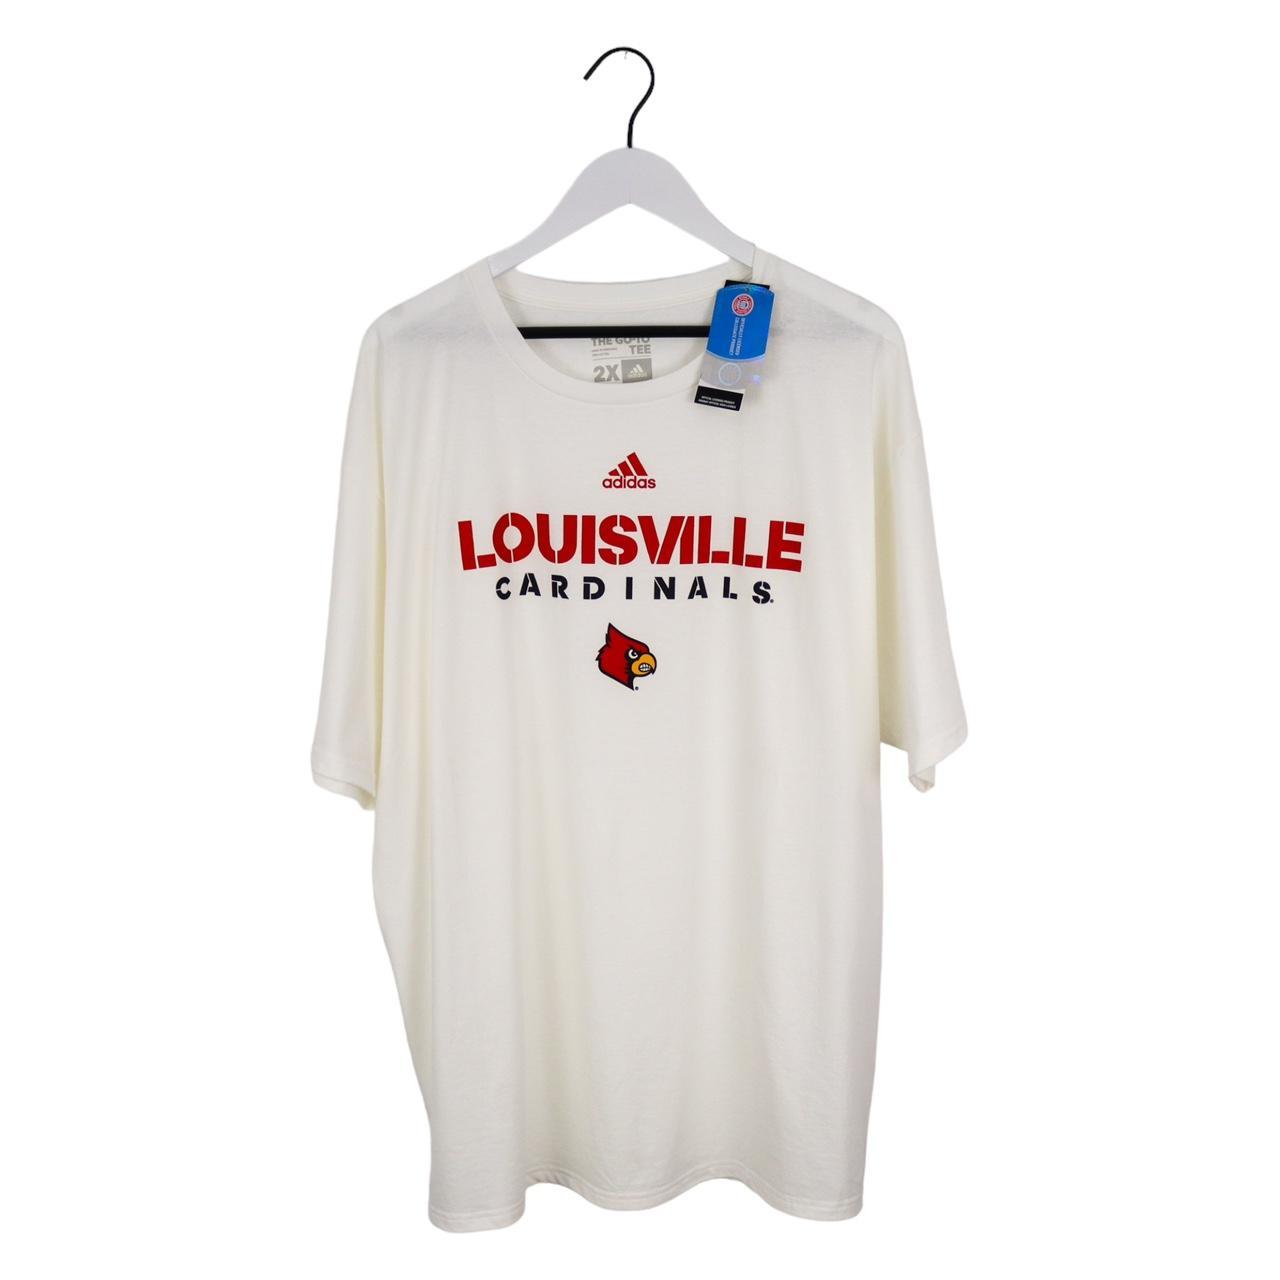 Adidas Men's Louisville Cardinals Sweatshirt